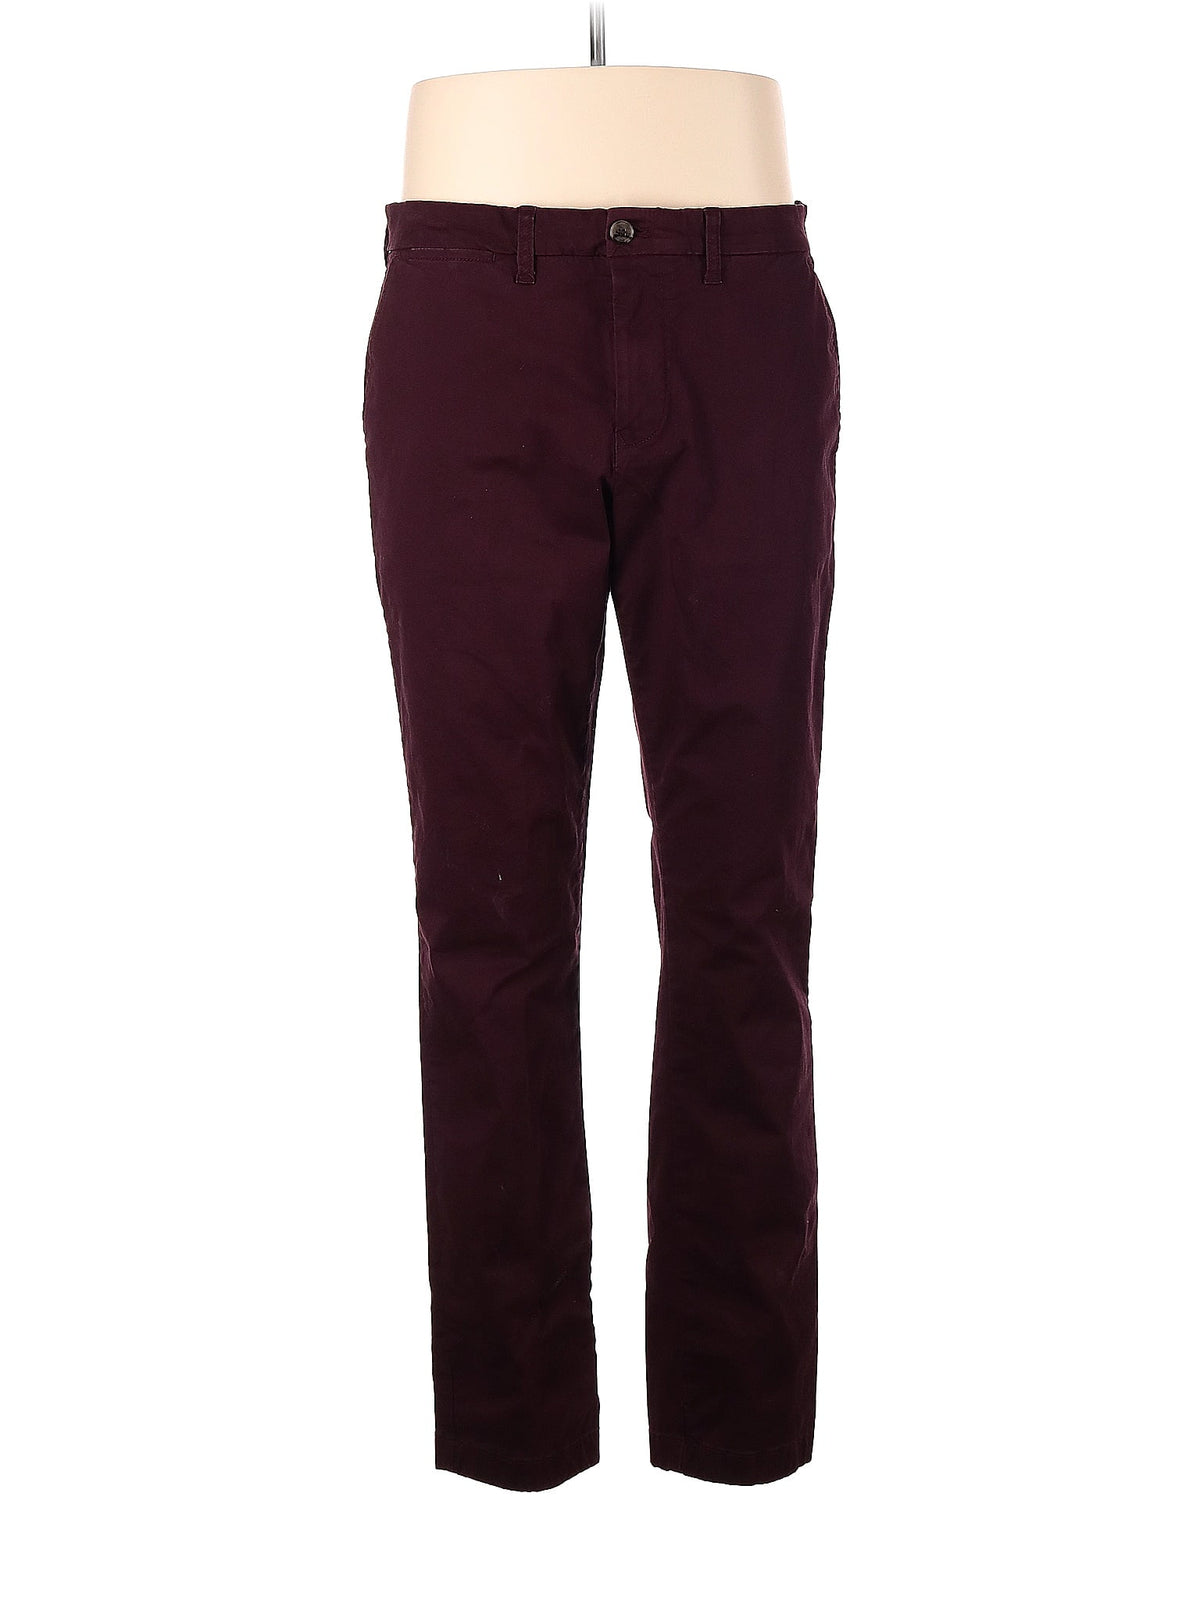 Khaki/Chino Pants size - 34 (W34 L32)